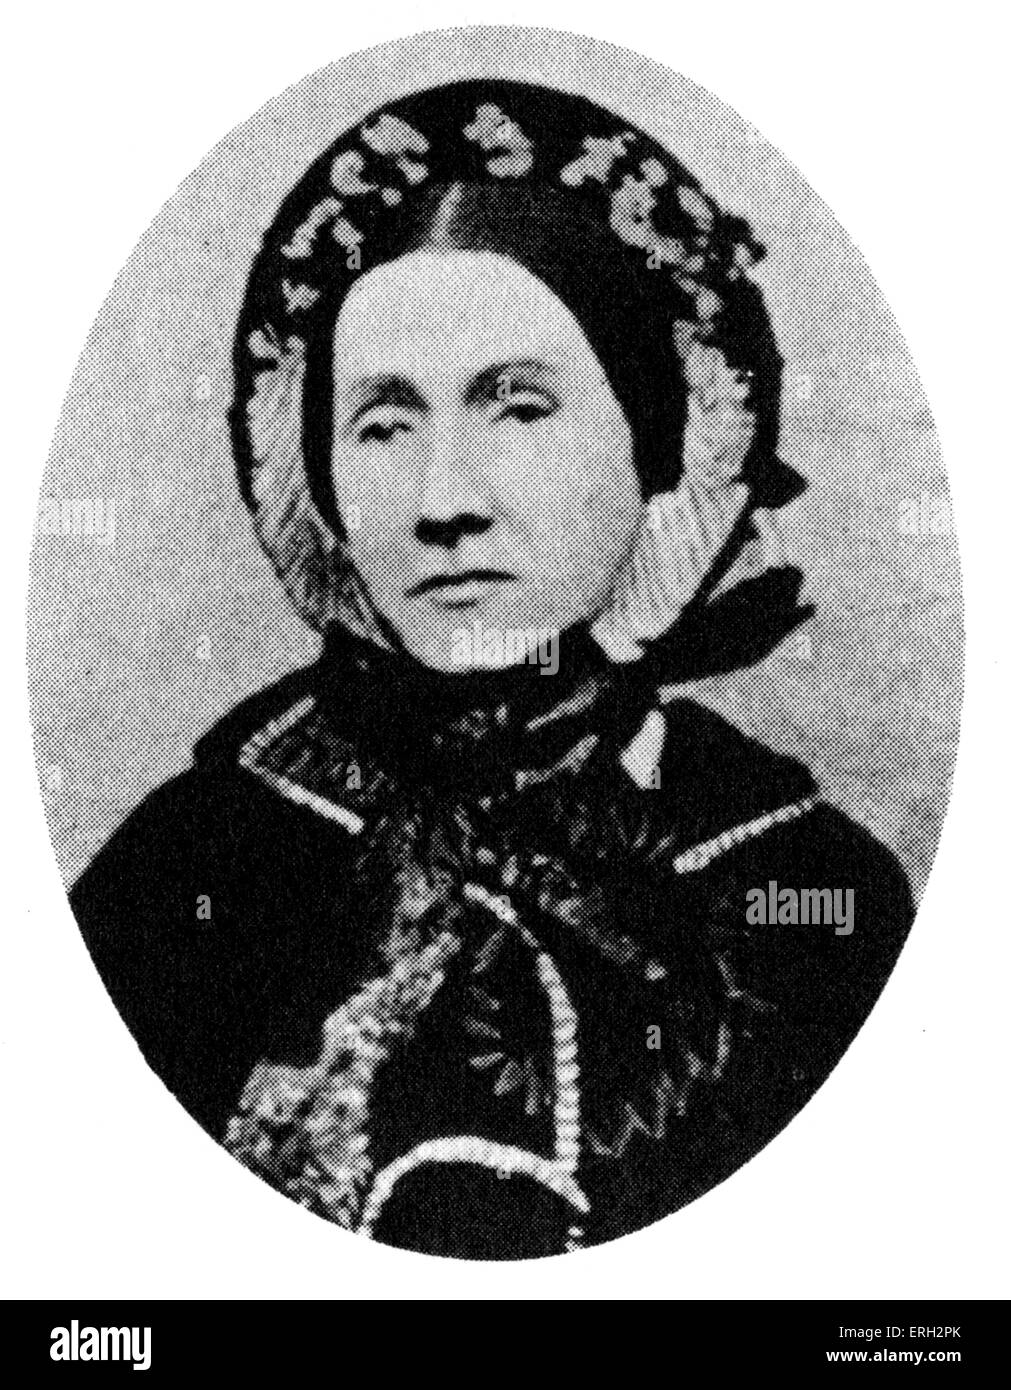 Julia Ward Howe, abolicionista estadounidense y poeta. 27 de mayo de1819 - 17 de octubre de 1910. Foto de stock